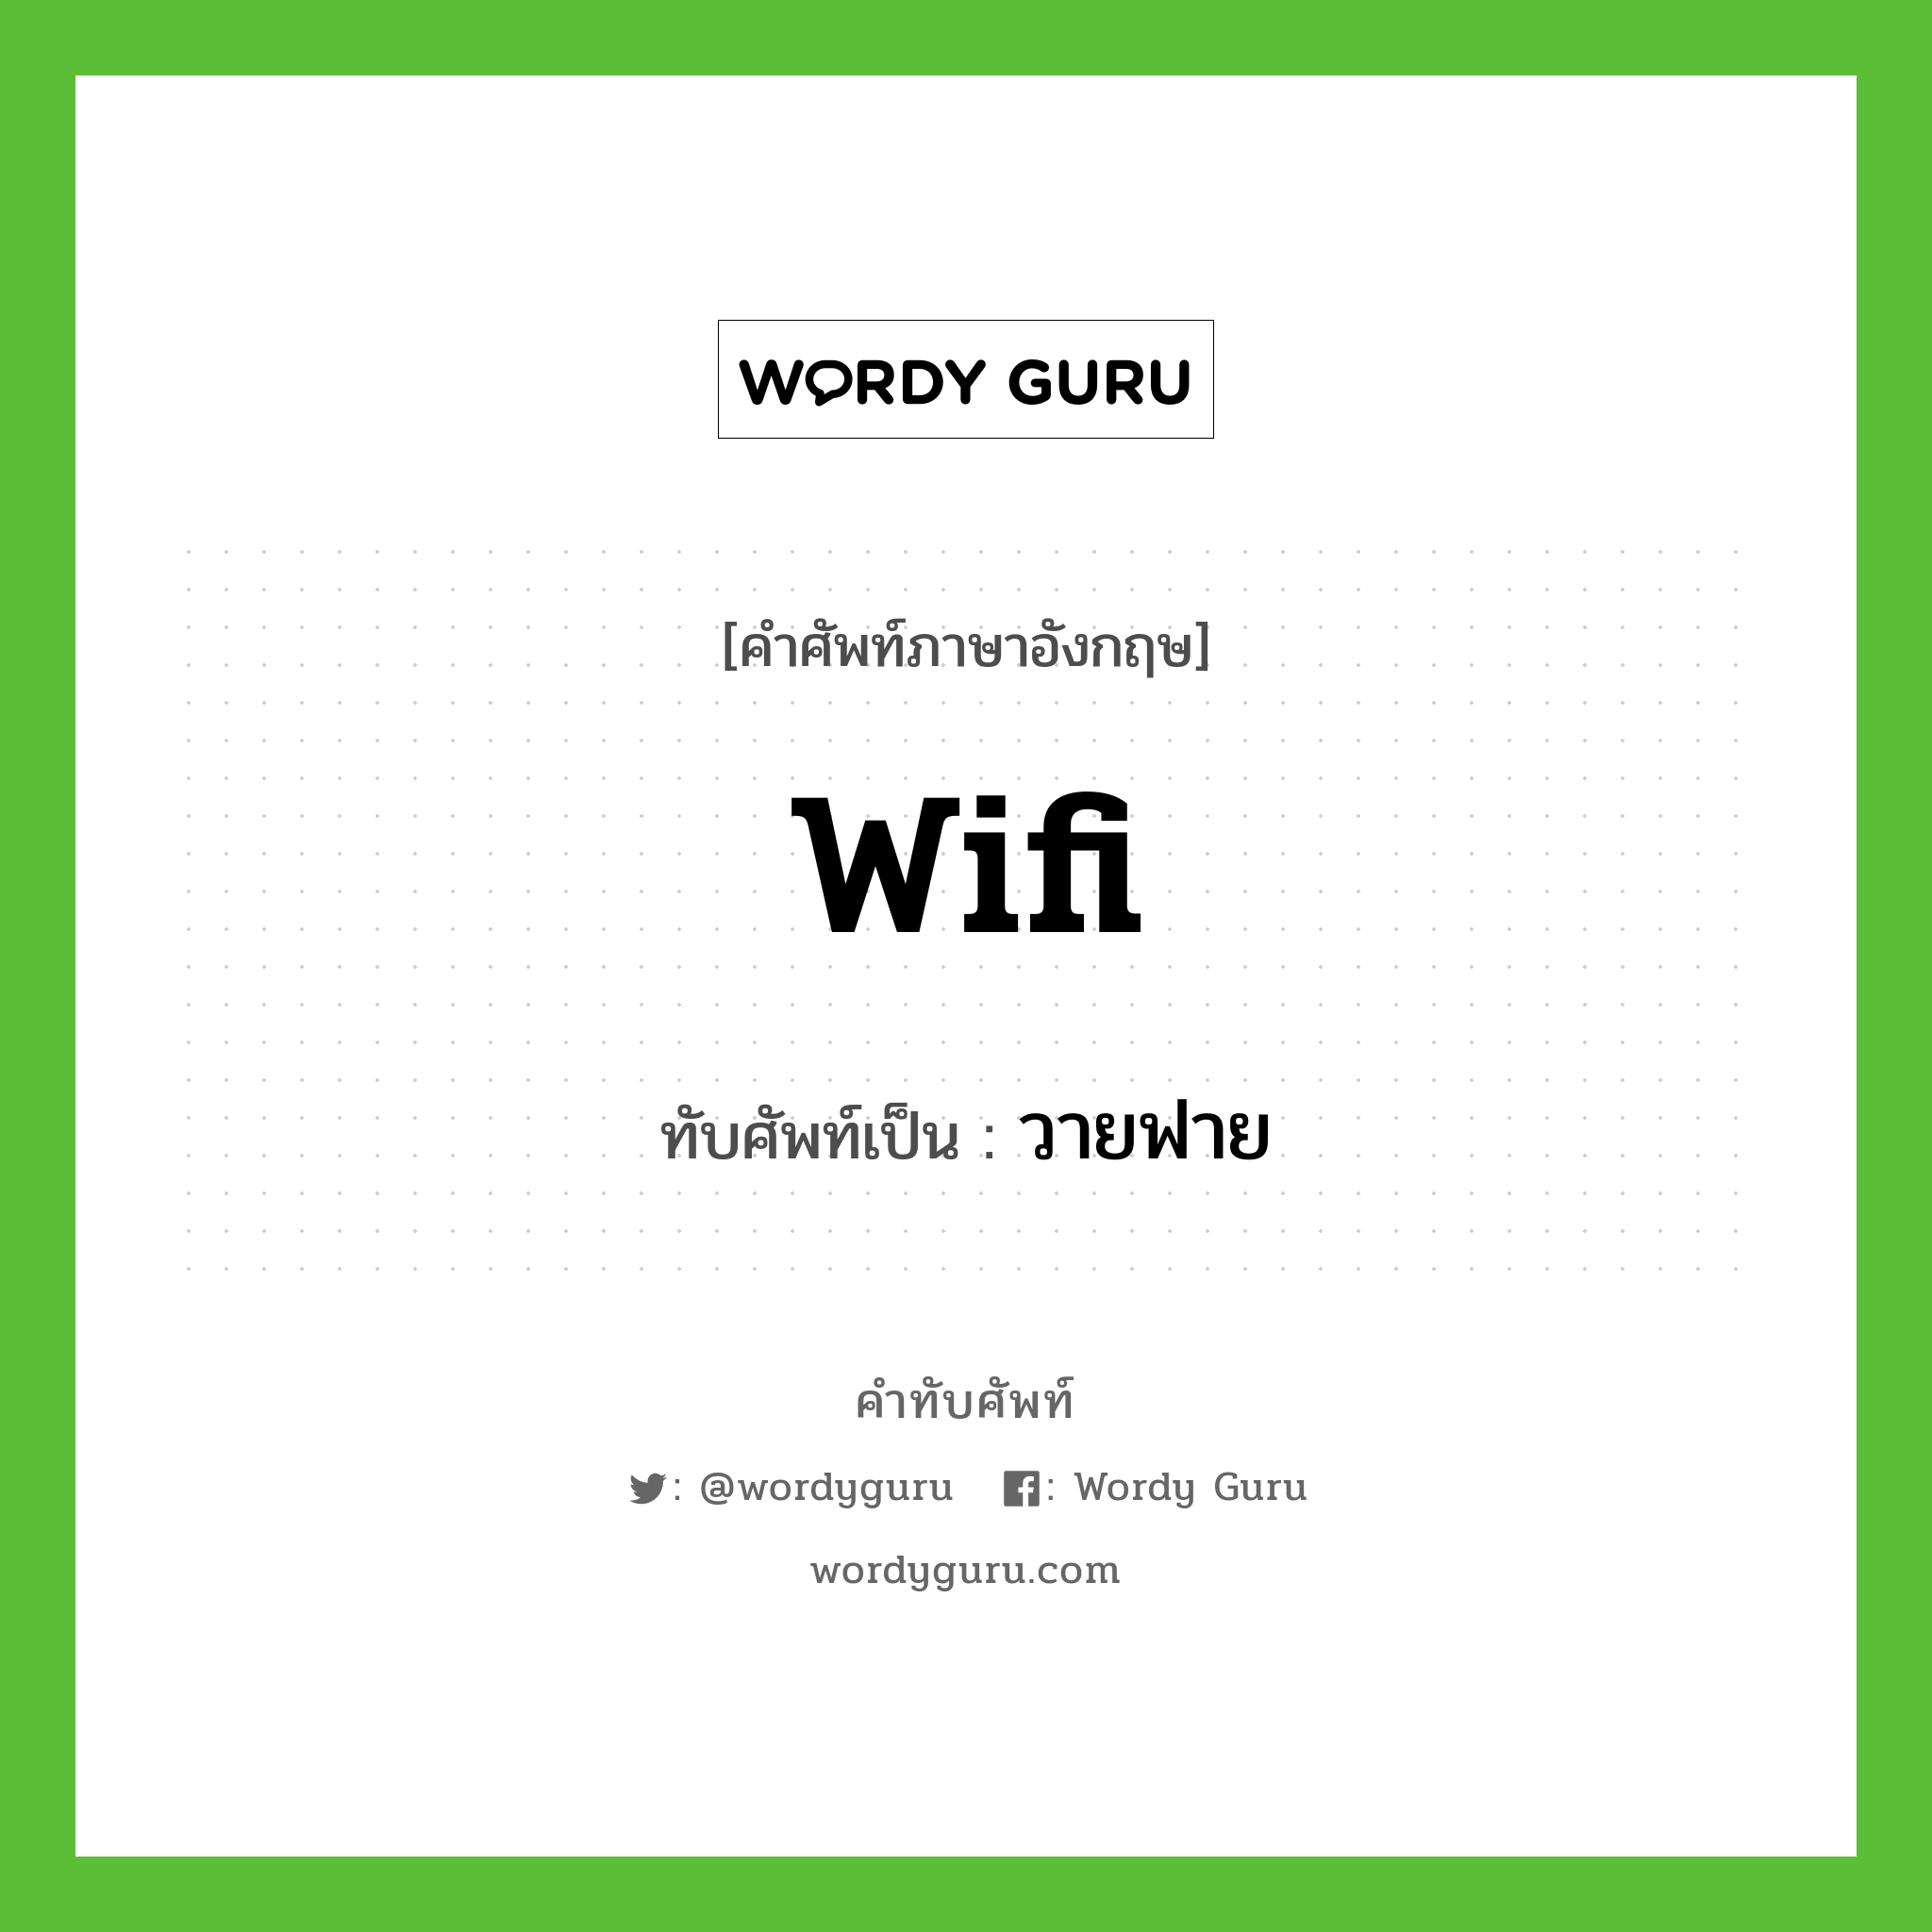 wifi เขียนเป็นคำไทยว่าอะไร?, คำศัพท์ภาษาอังกฤษ wifi ทับศัพท์เป็น วายฟาย